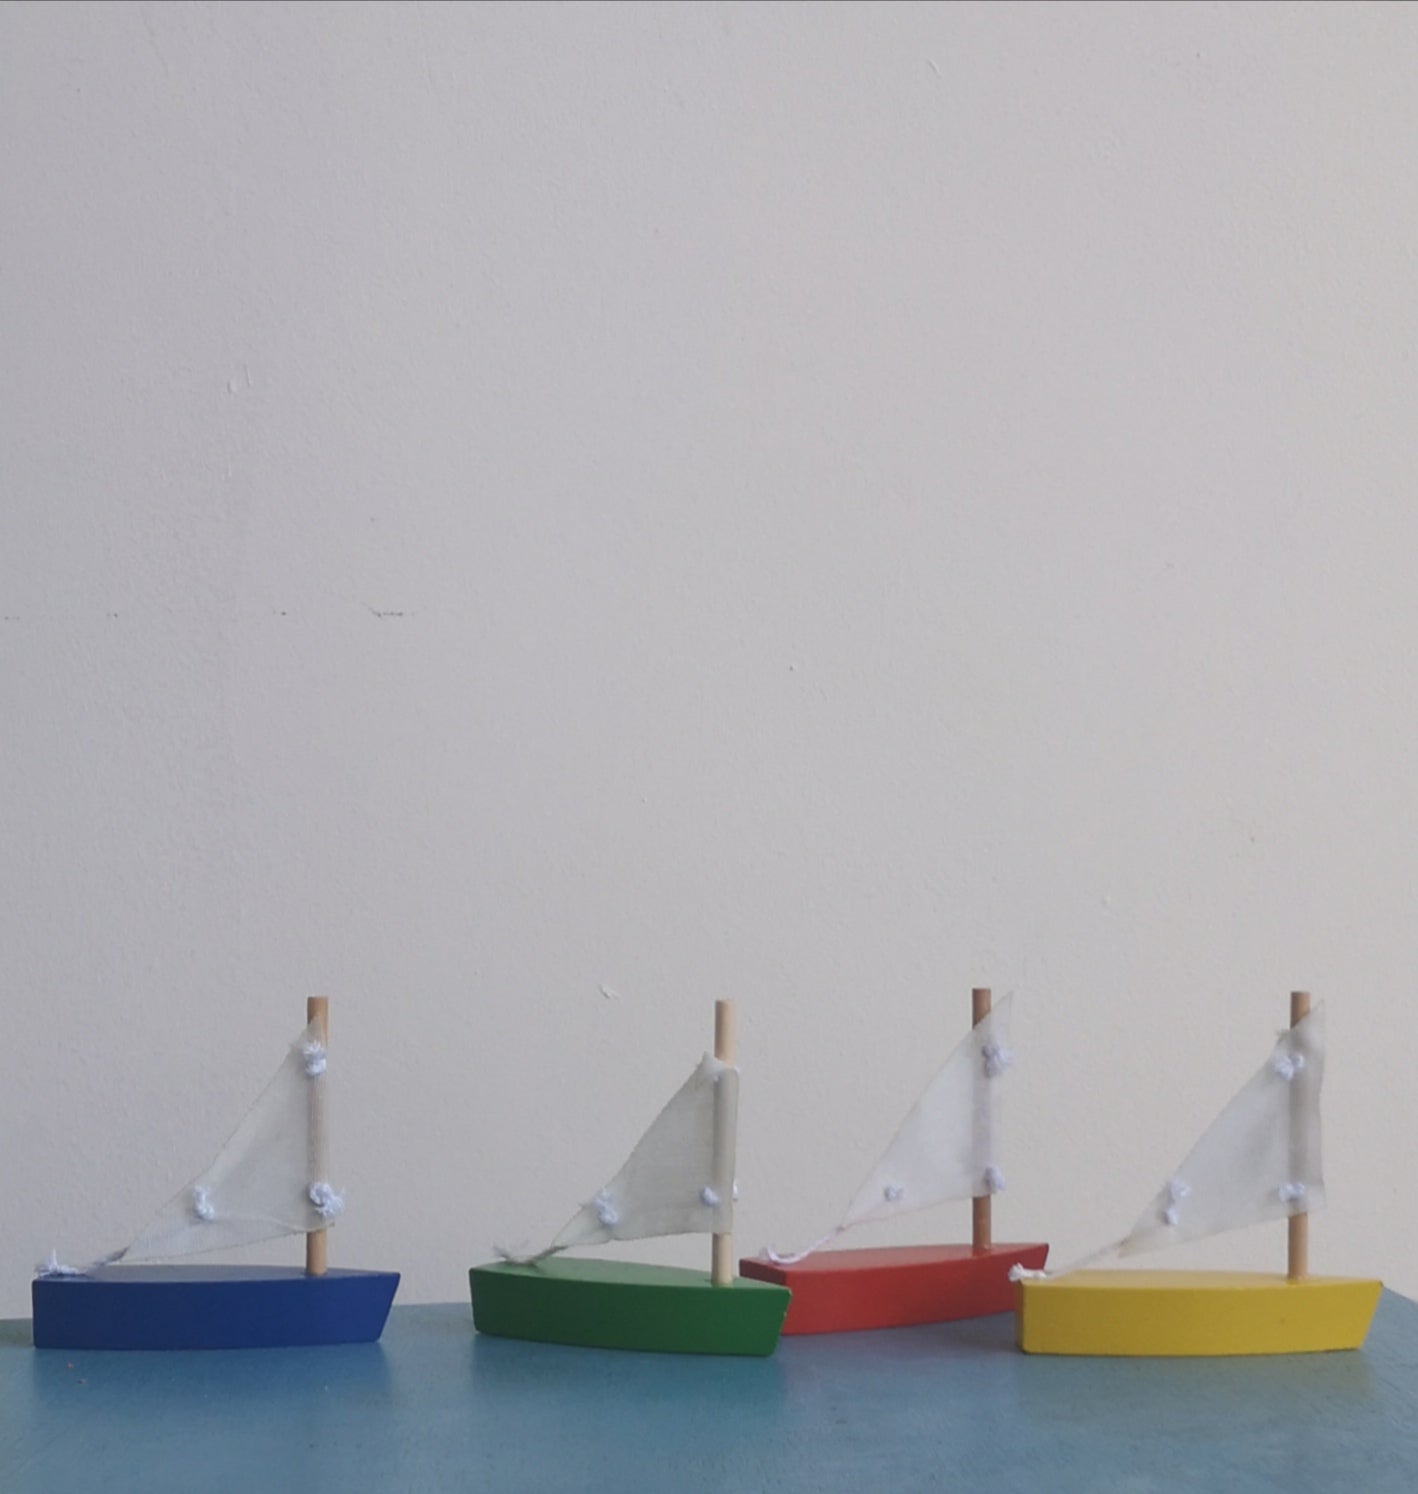 Mini sail boat